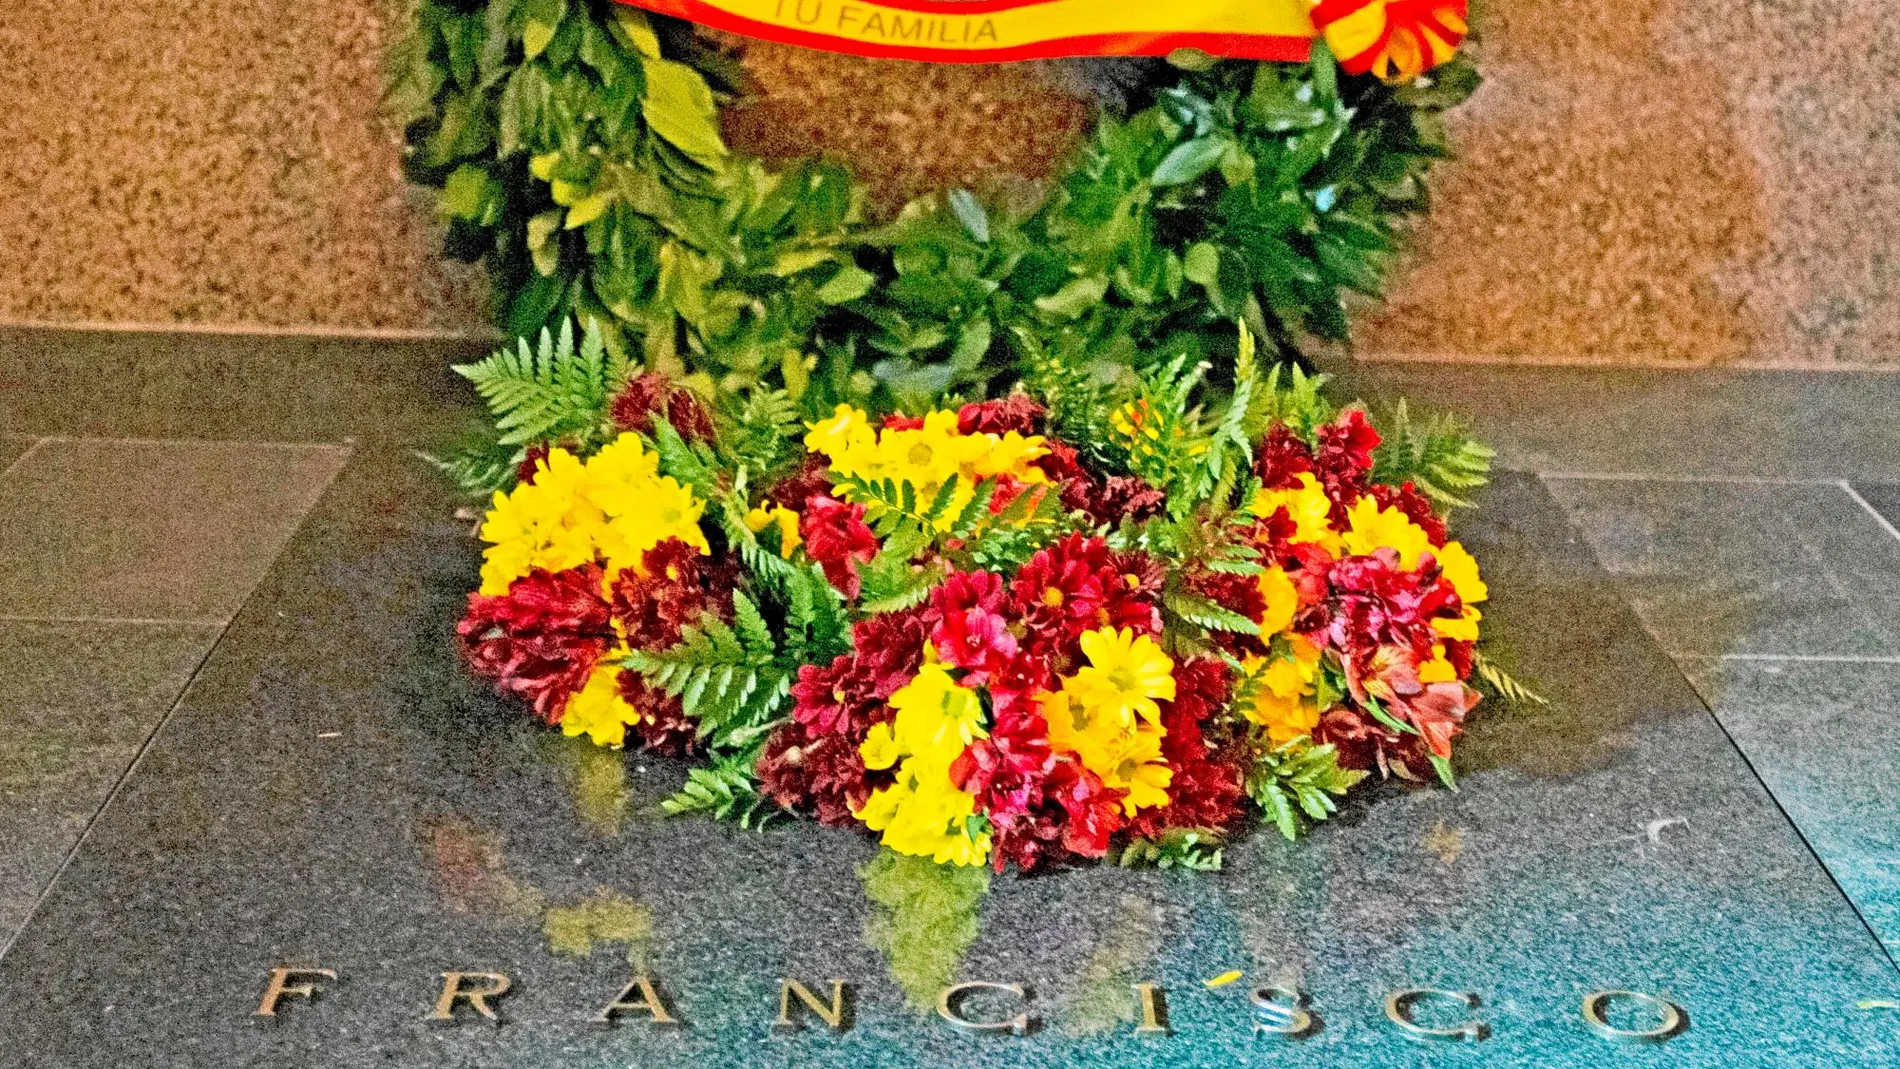 La lápida que cubre la tumba de Franco en Mingorrubio